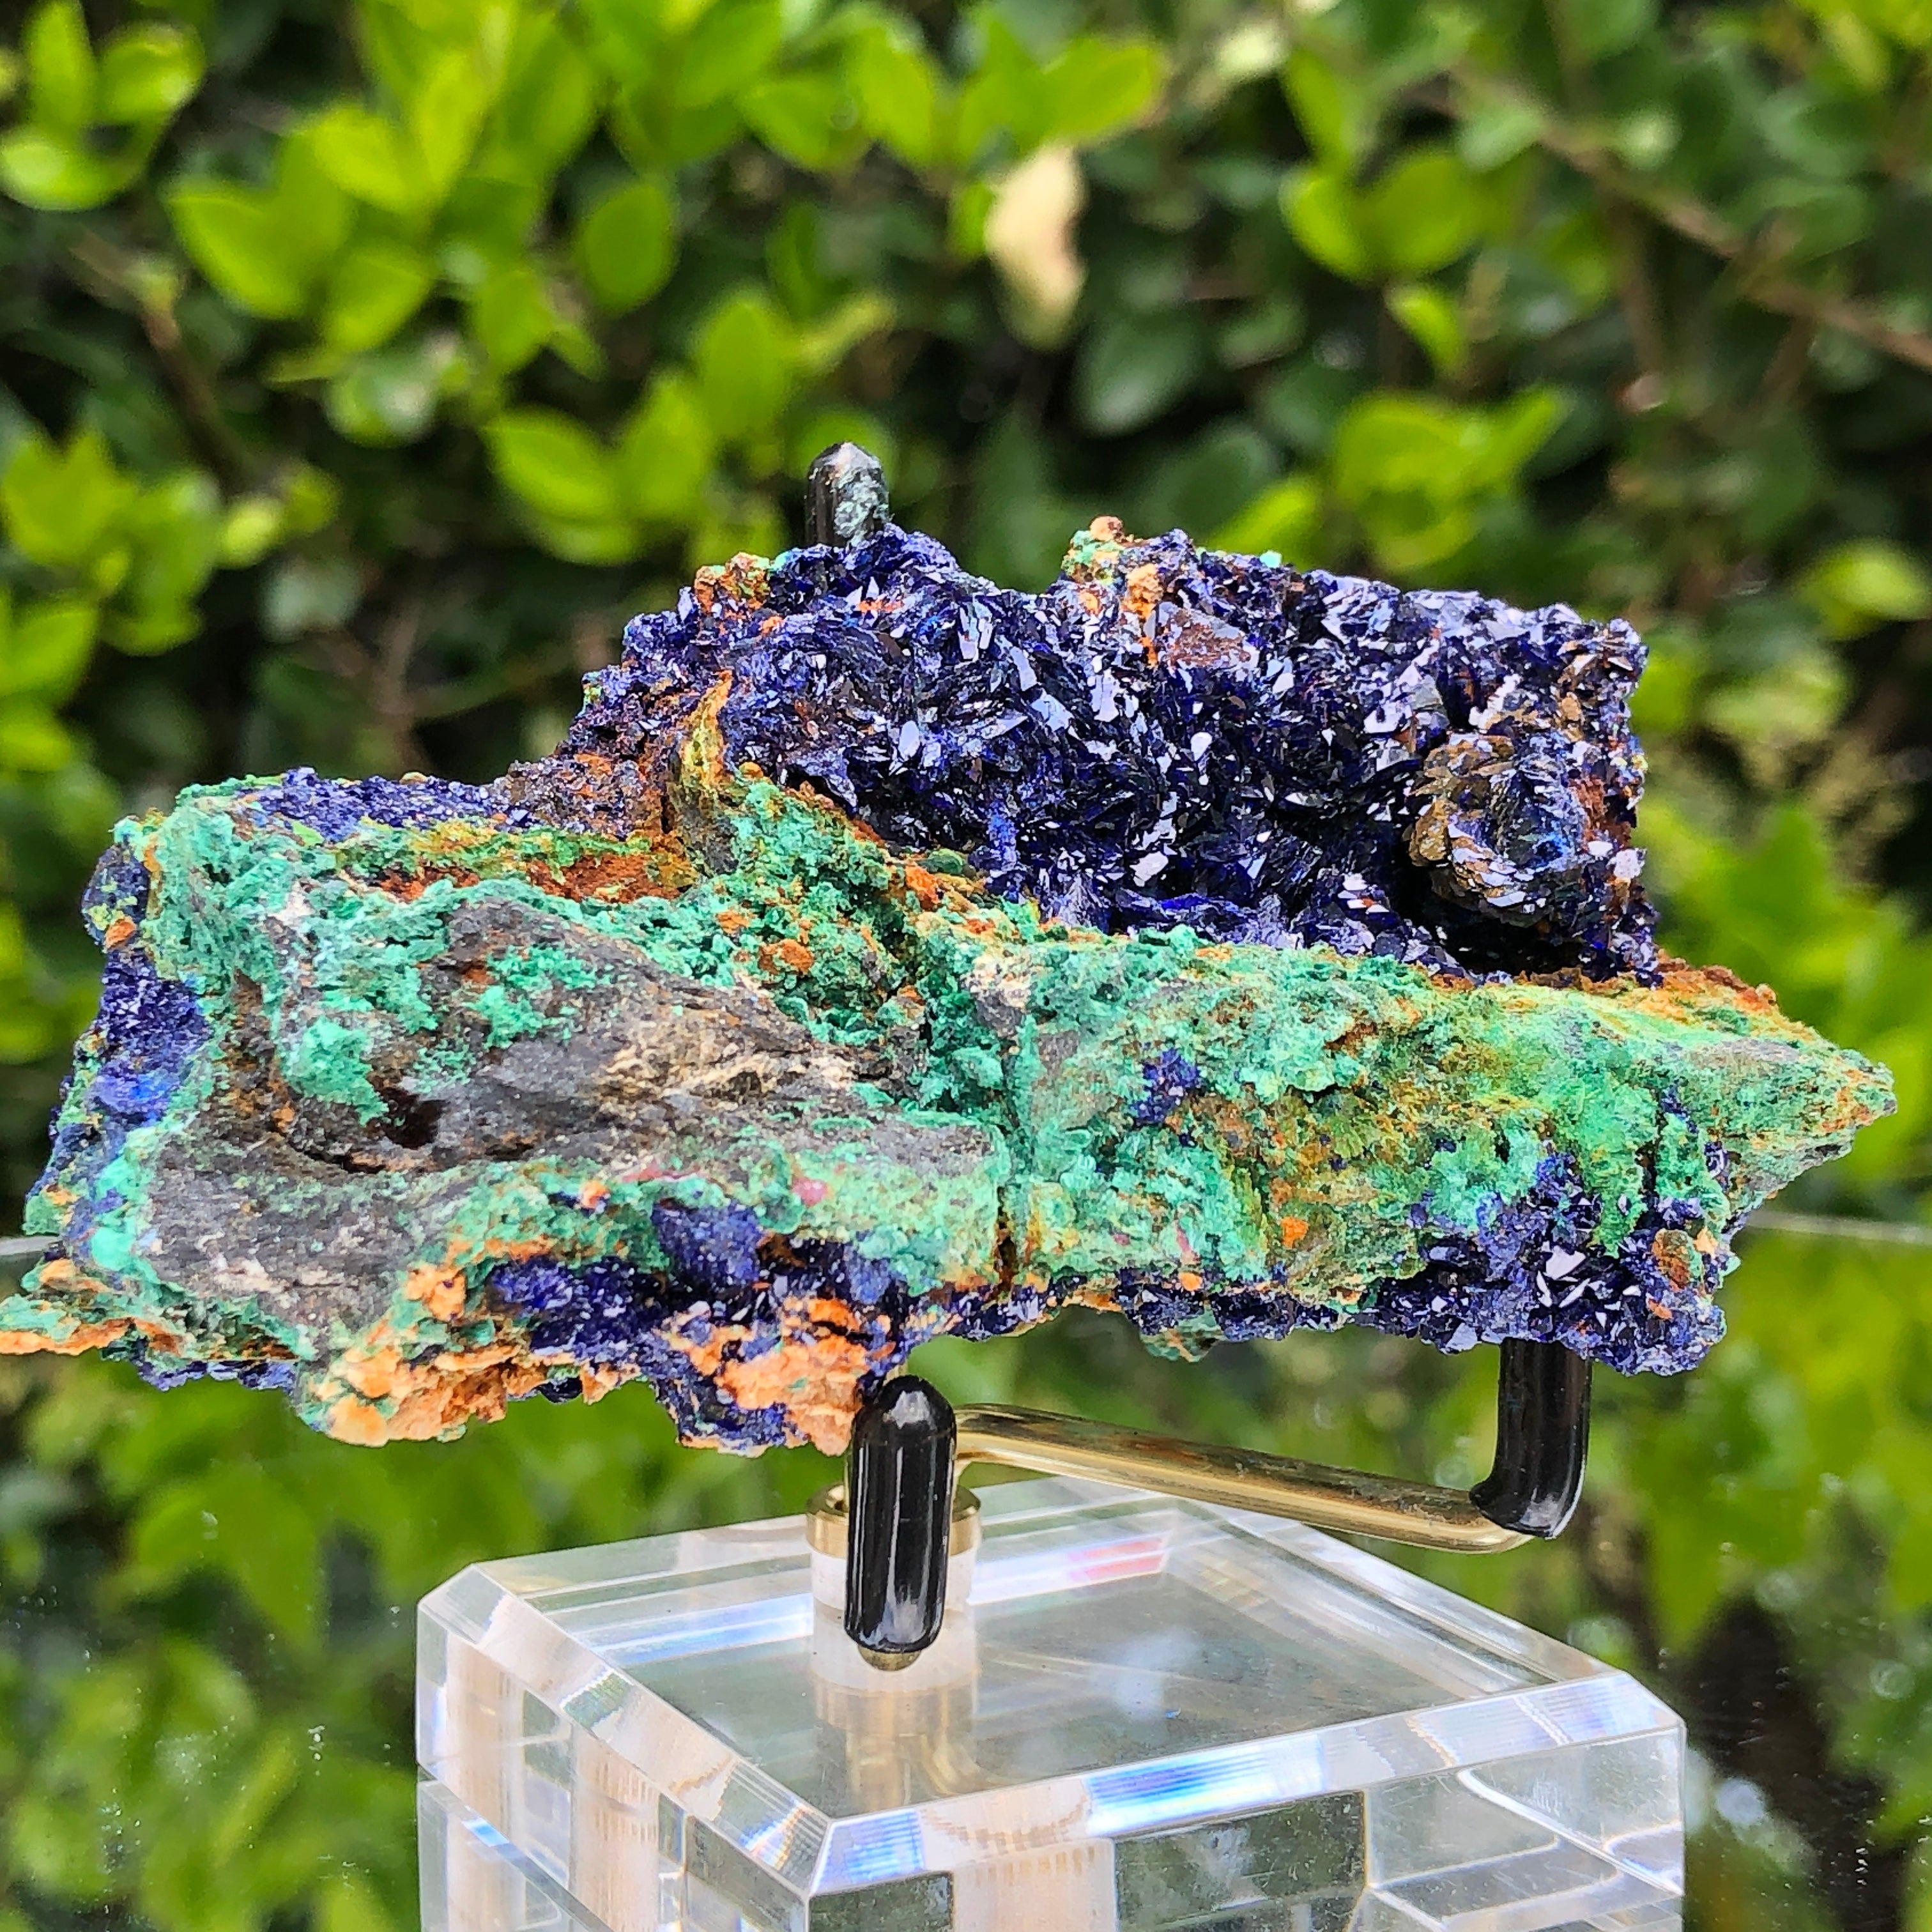 266g 10x5.5x4.5cm Blue Azurite w/ green Malachite from Sepon Mine, Laos